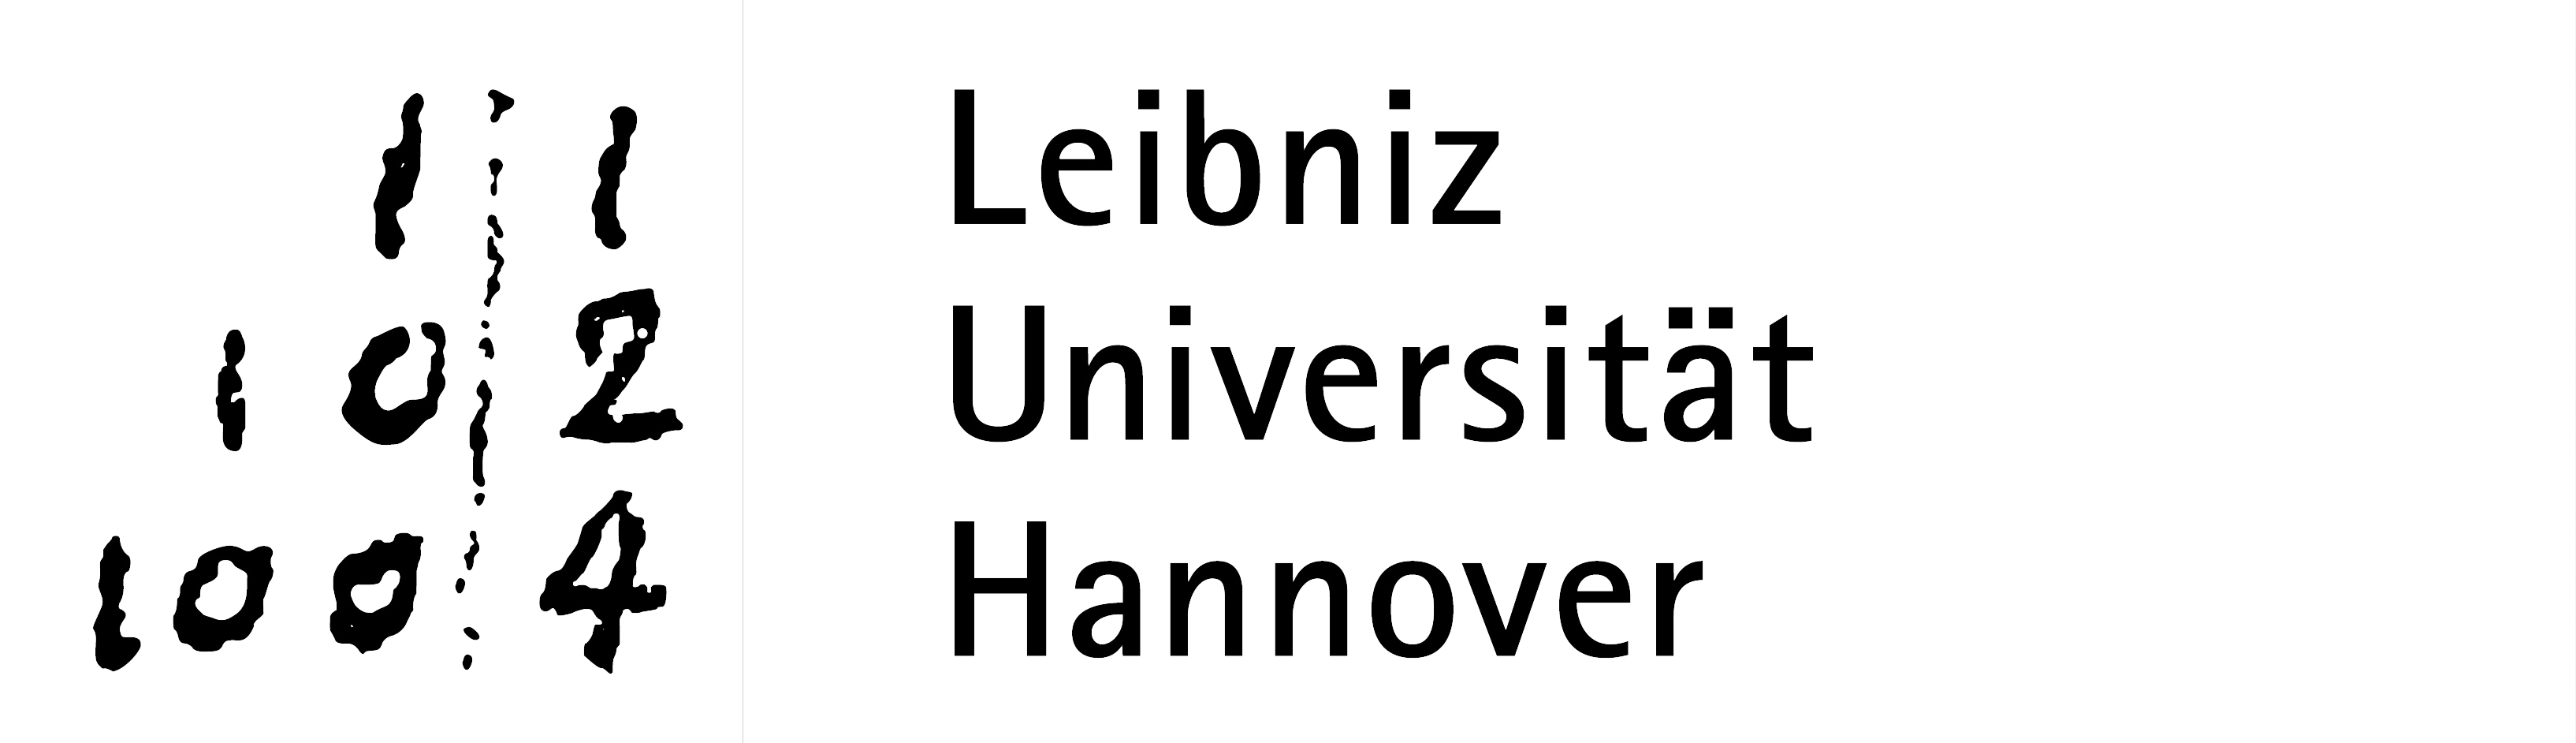 Leibniz Universität Hannover, LOGO